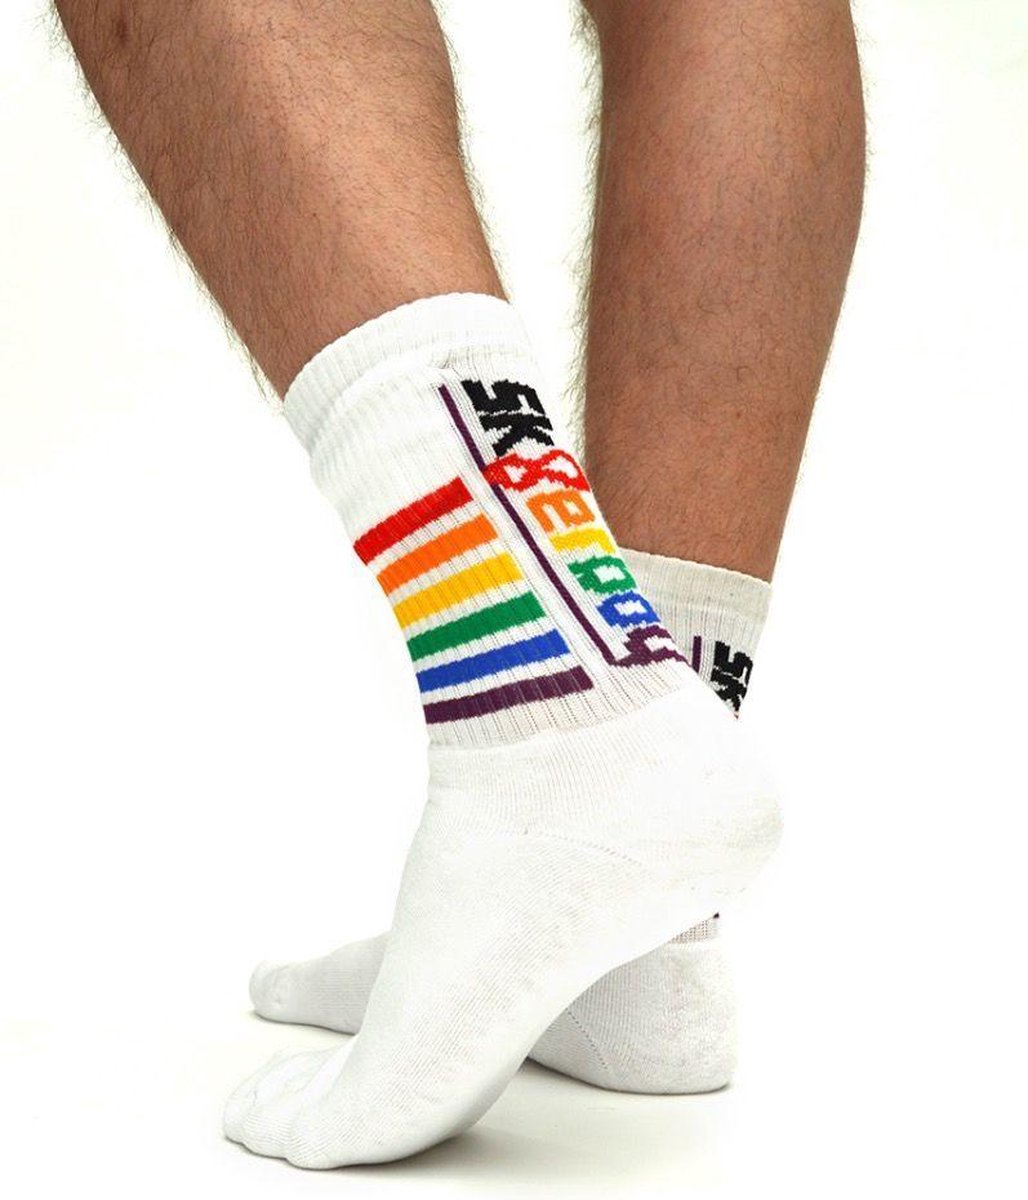 Sk8erboy Gaypride Socks 43-46